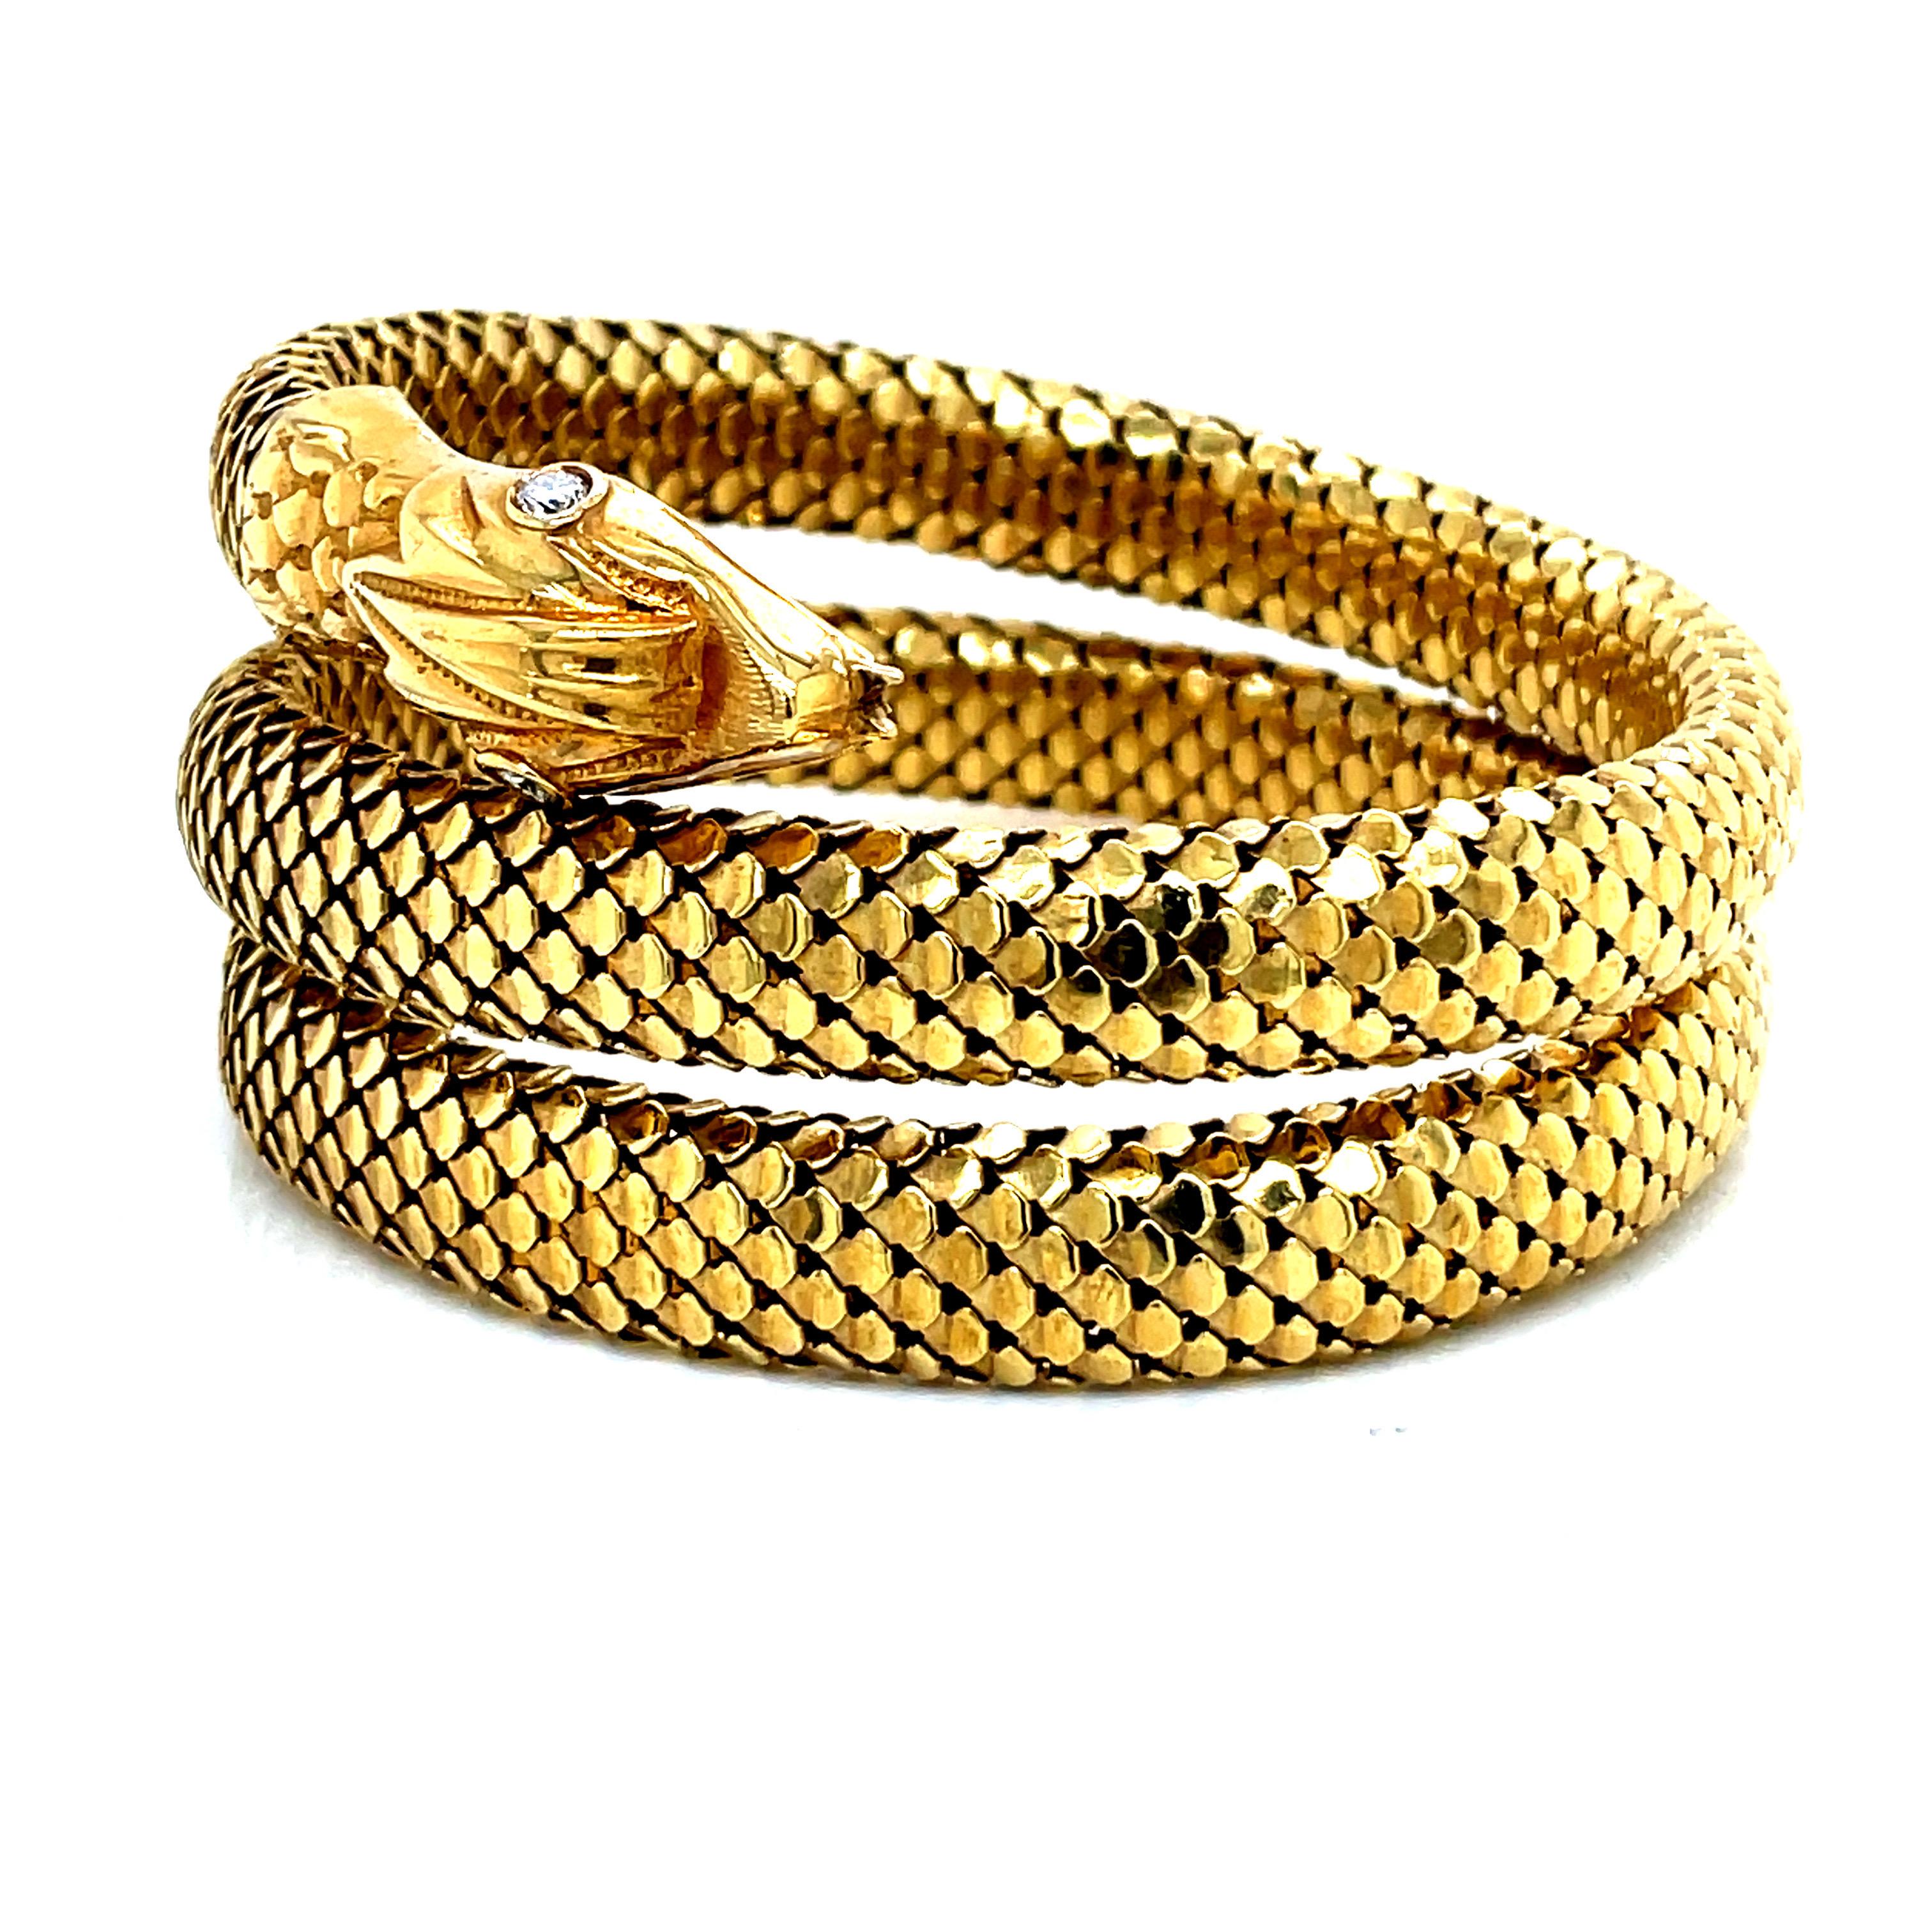 Le bracelet serpent vintage est une pièce remarquable et complexe en or jaune 18 carats qui témoigne d'un savoir-faire exceptionnel. La conception en maille souple permet de le porter comme un bracelet ou un brassard, en s'adaptant aux différentes